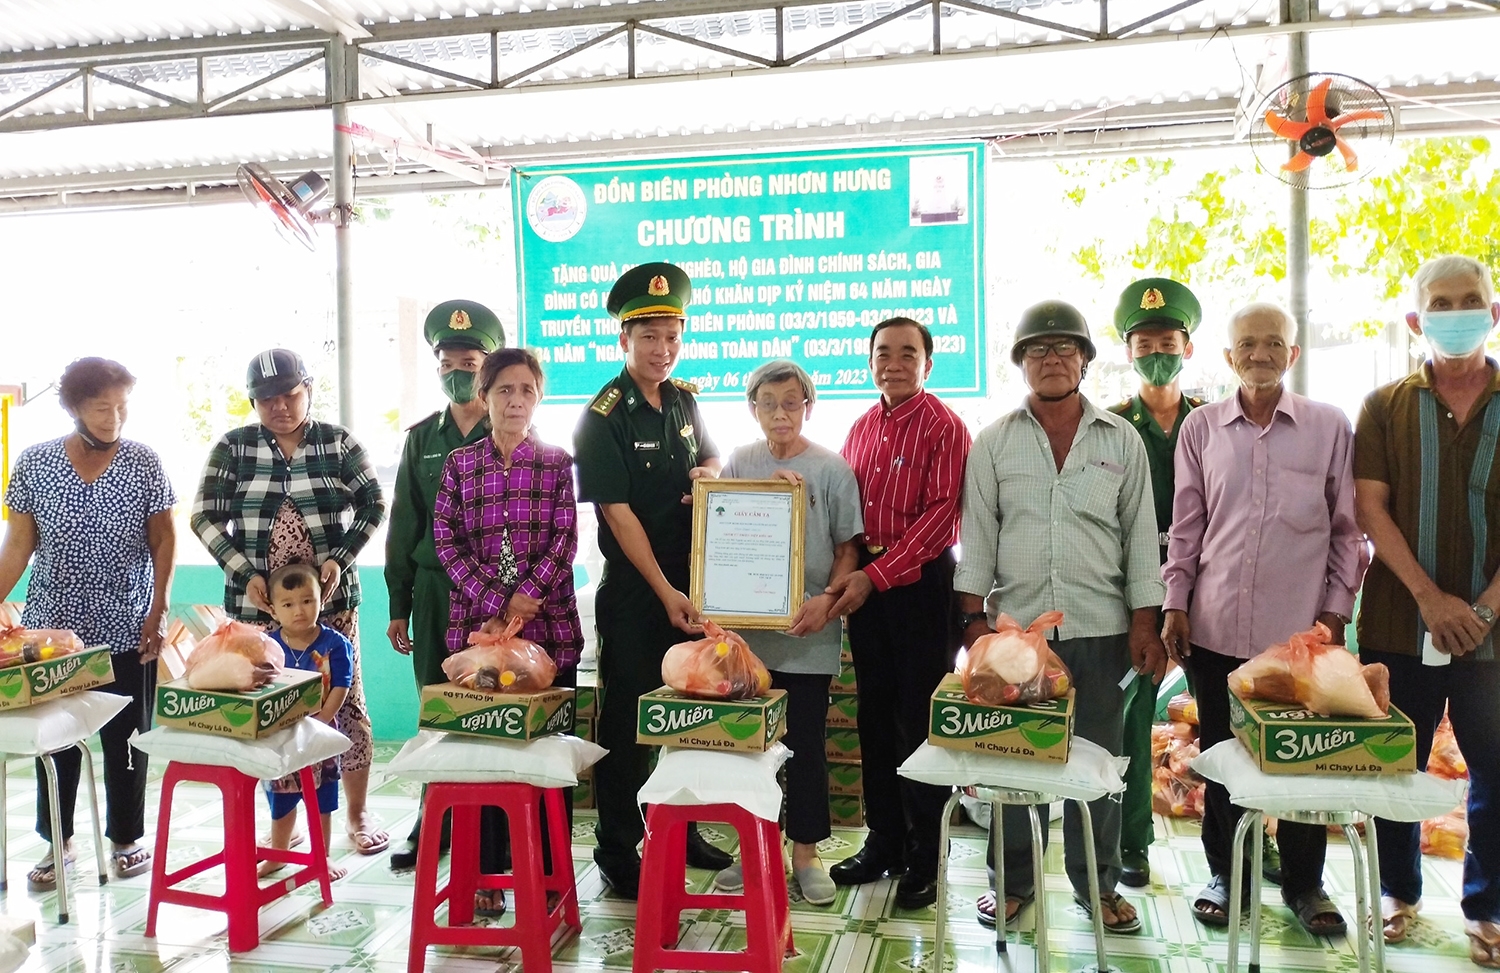 Đại diện Đồn Biên phòng Nhơn Hưng, Hội Người cao tuổi xã An Phú gửi lời cảm ơn đến các Nhà hảo tâm và trao quà cho các hộ gia đình khó khăn